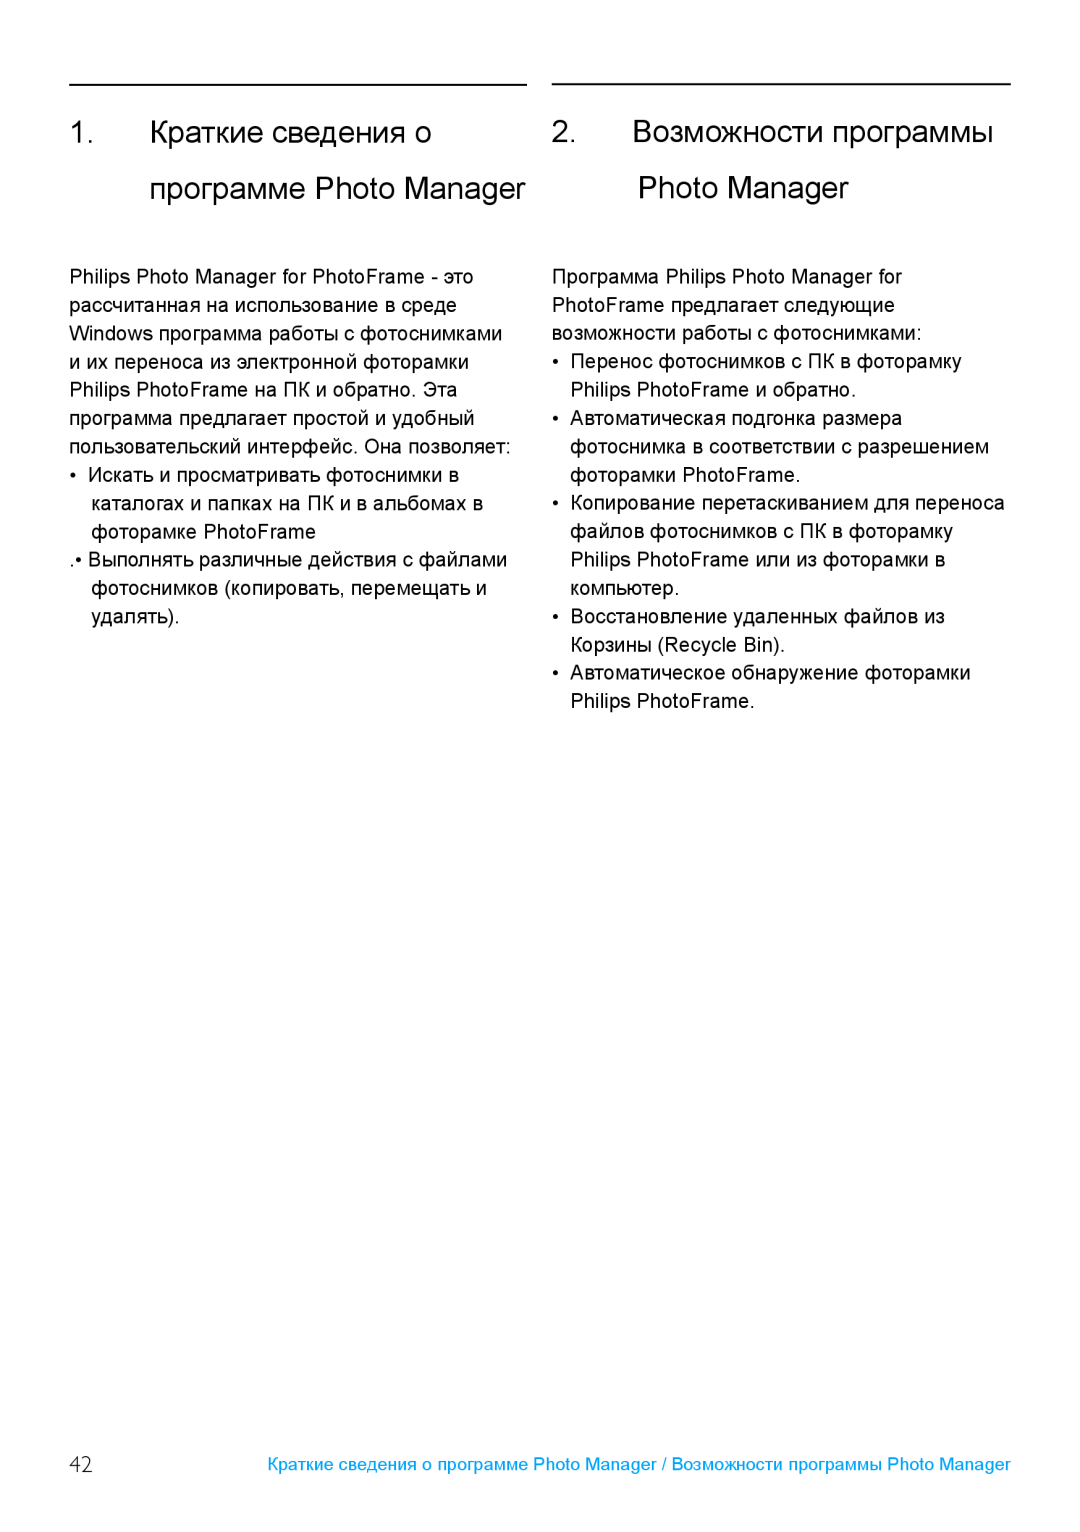 Philips 10FF2, 52PFL7432, 5FF2 user manual 1. Краткие сведения о 2. Возможности программы, программе Photo Manager 